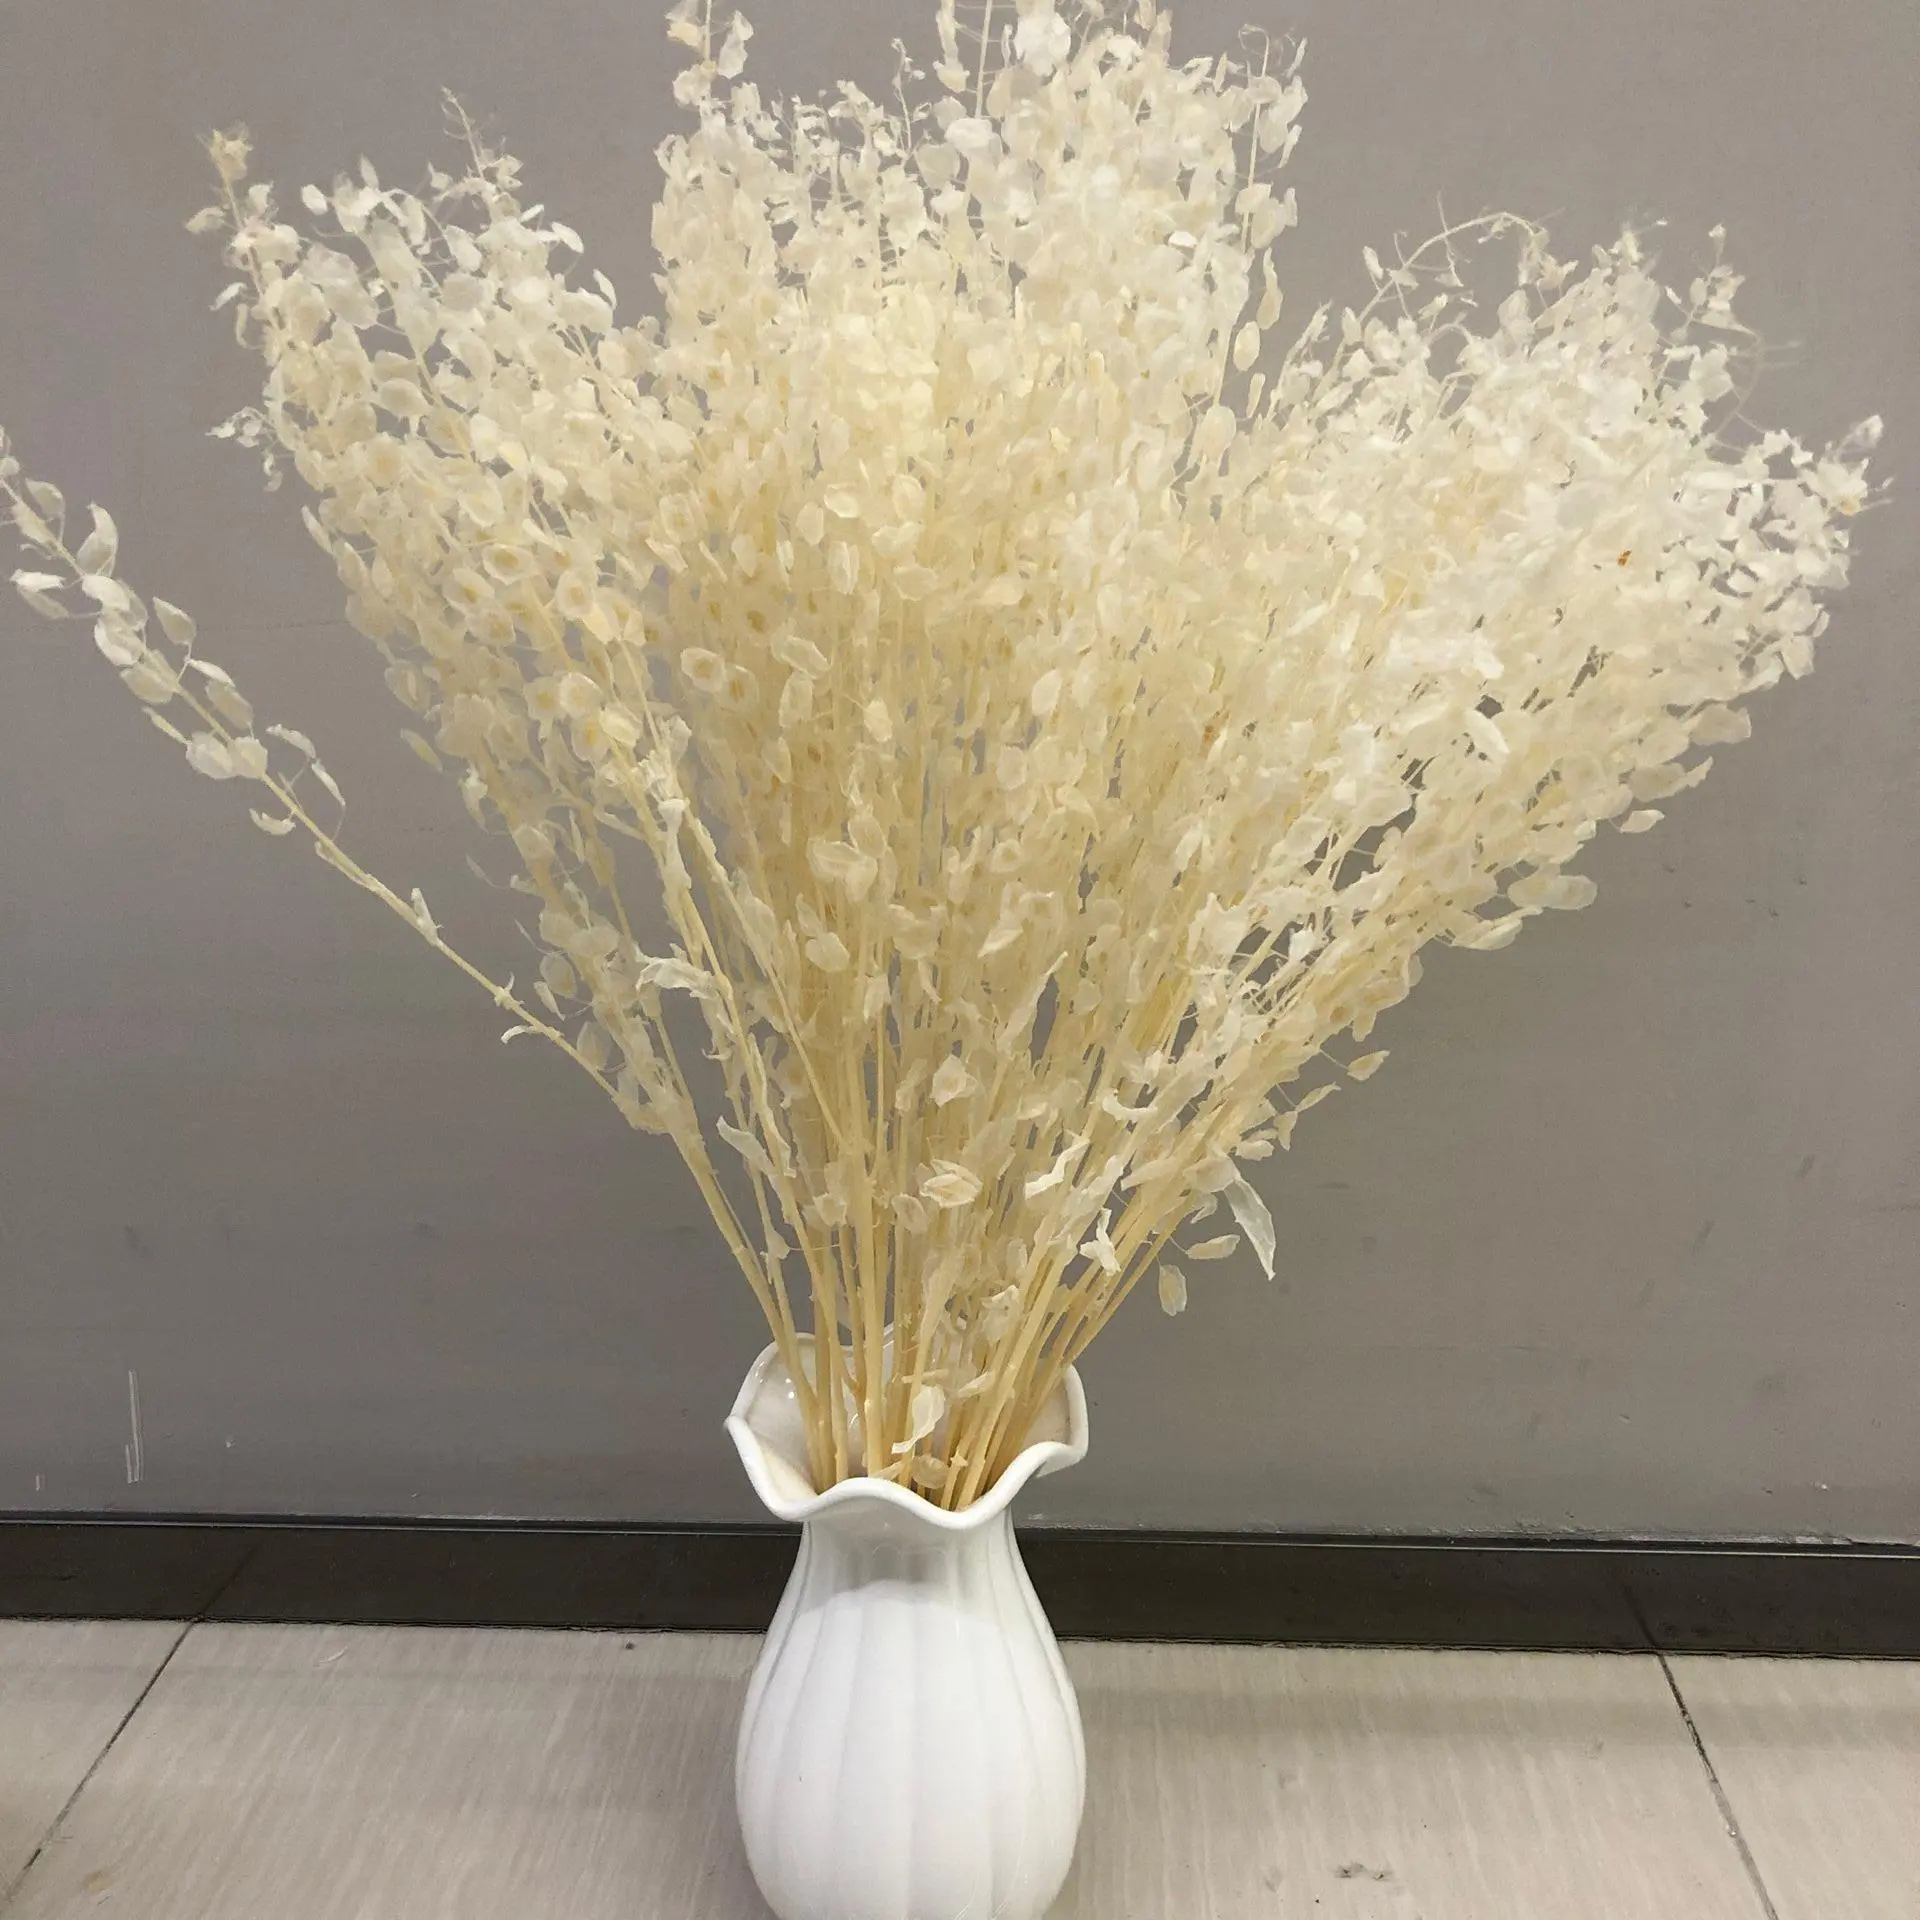 C280-hojas naturales decorativas para el hogar, flores secas de semillas de Lunaria Annua